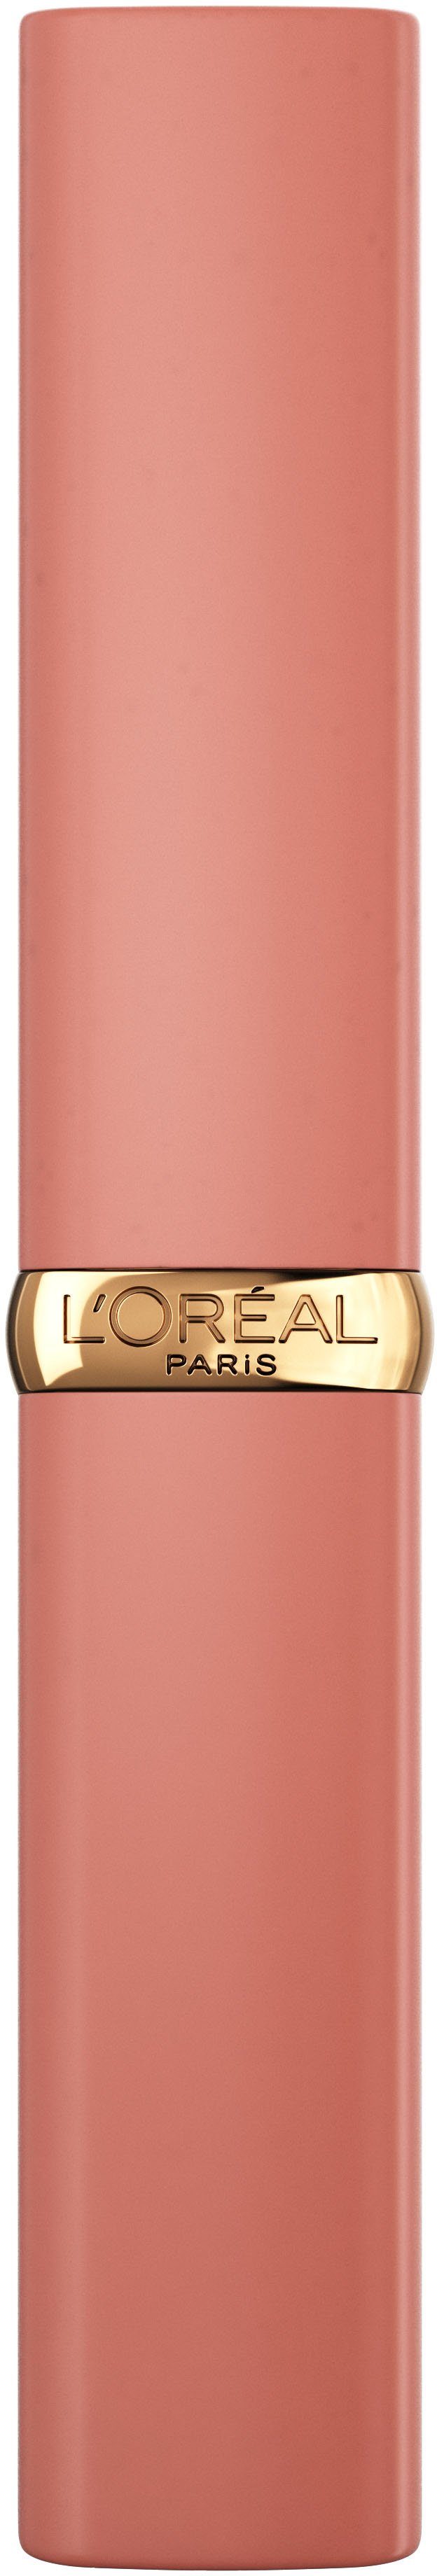 PARIS Volume Matte L'ORÉAL Lippenpflegestift Color Intense Riche